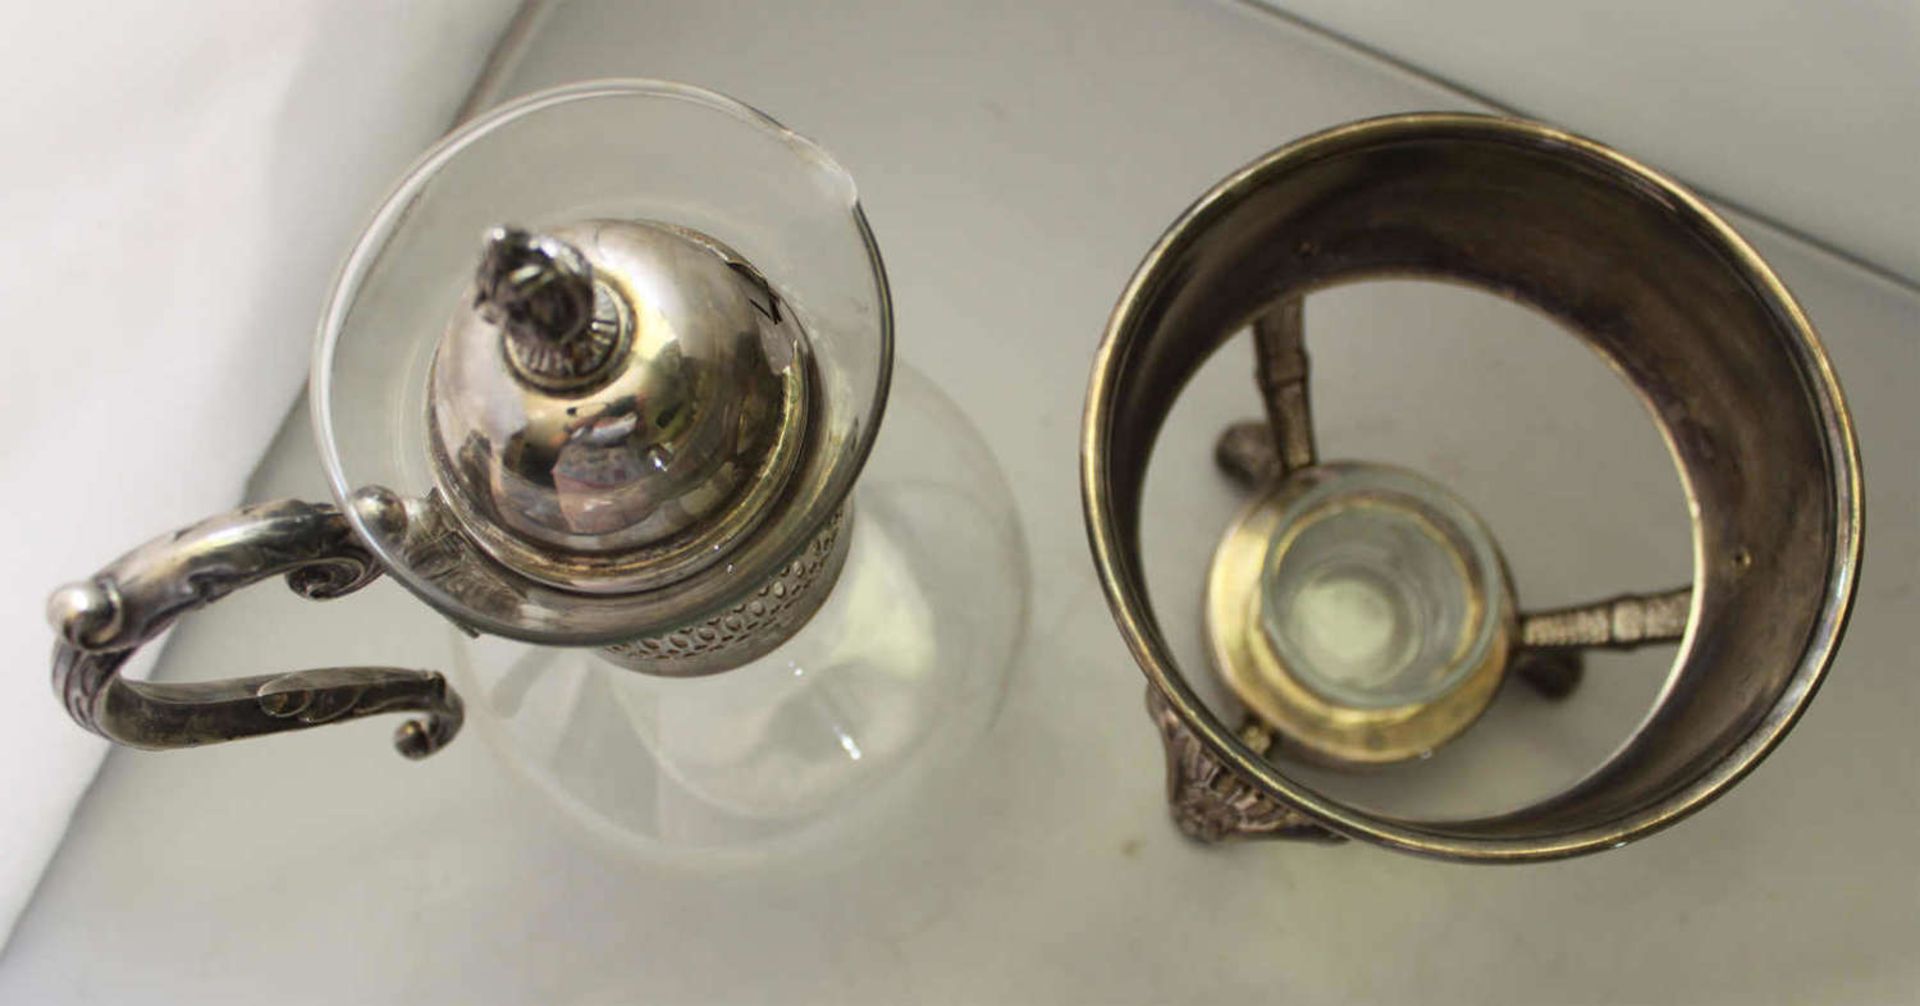 Jugendstil - ausgefallene Glaskanne mit Stövchen. Sehr feine Ausführung - Selten!Art Nouveau - fancy